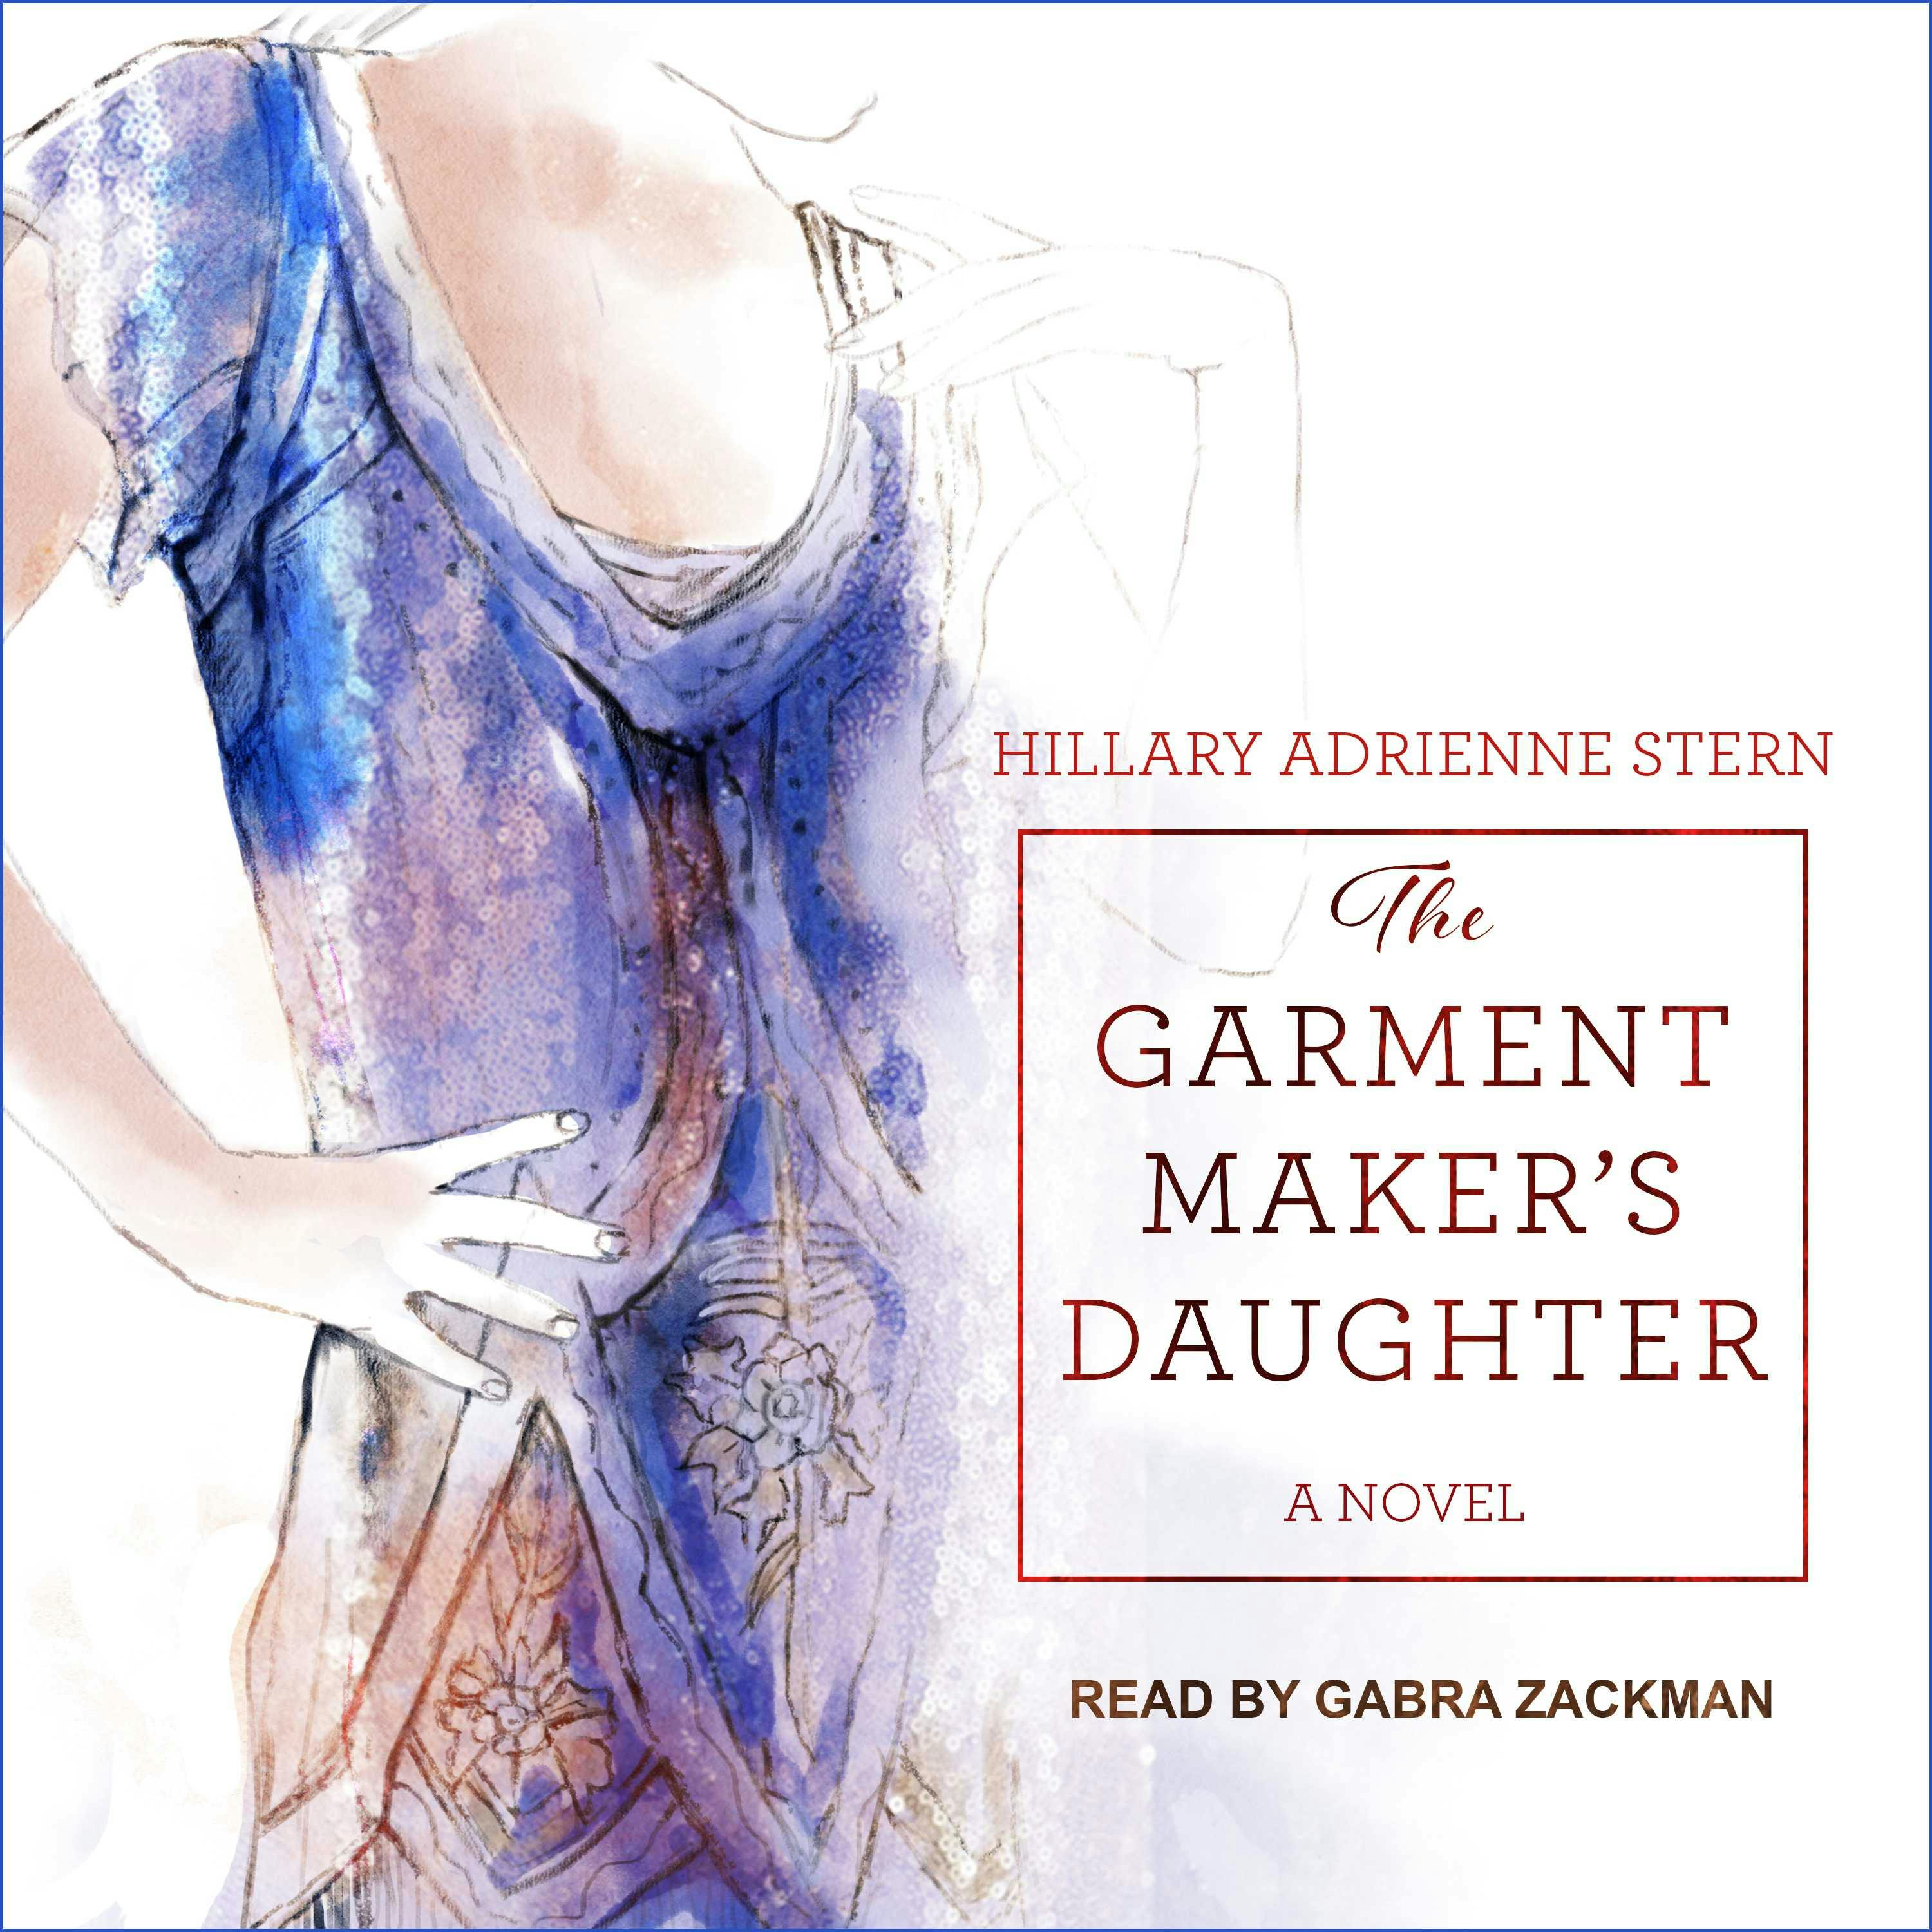 The Garment Maker's Daughter: A Novel - Hillary Adrienne Stern